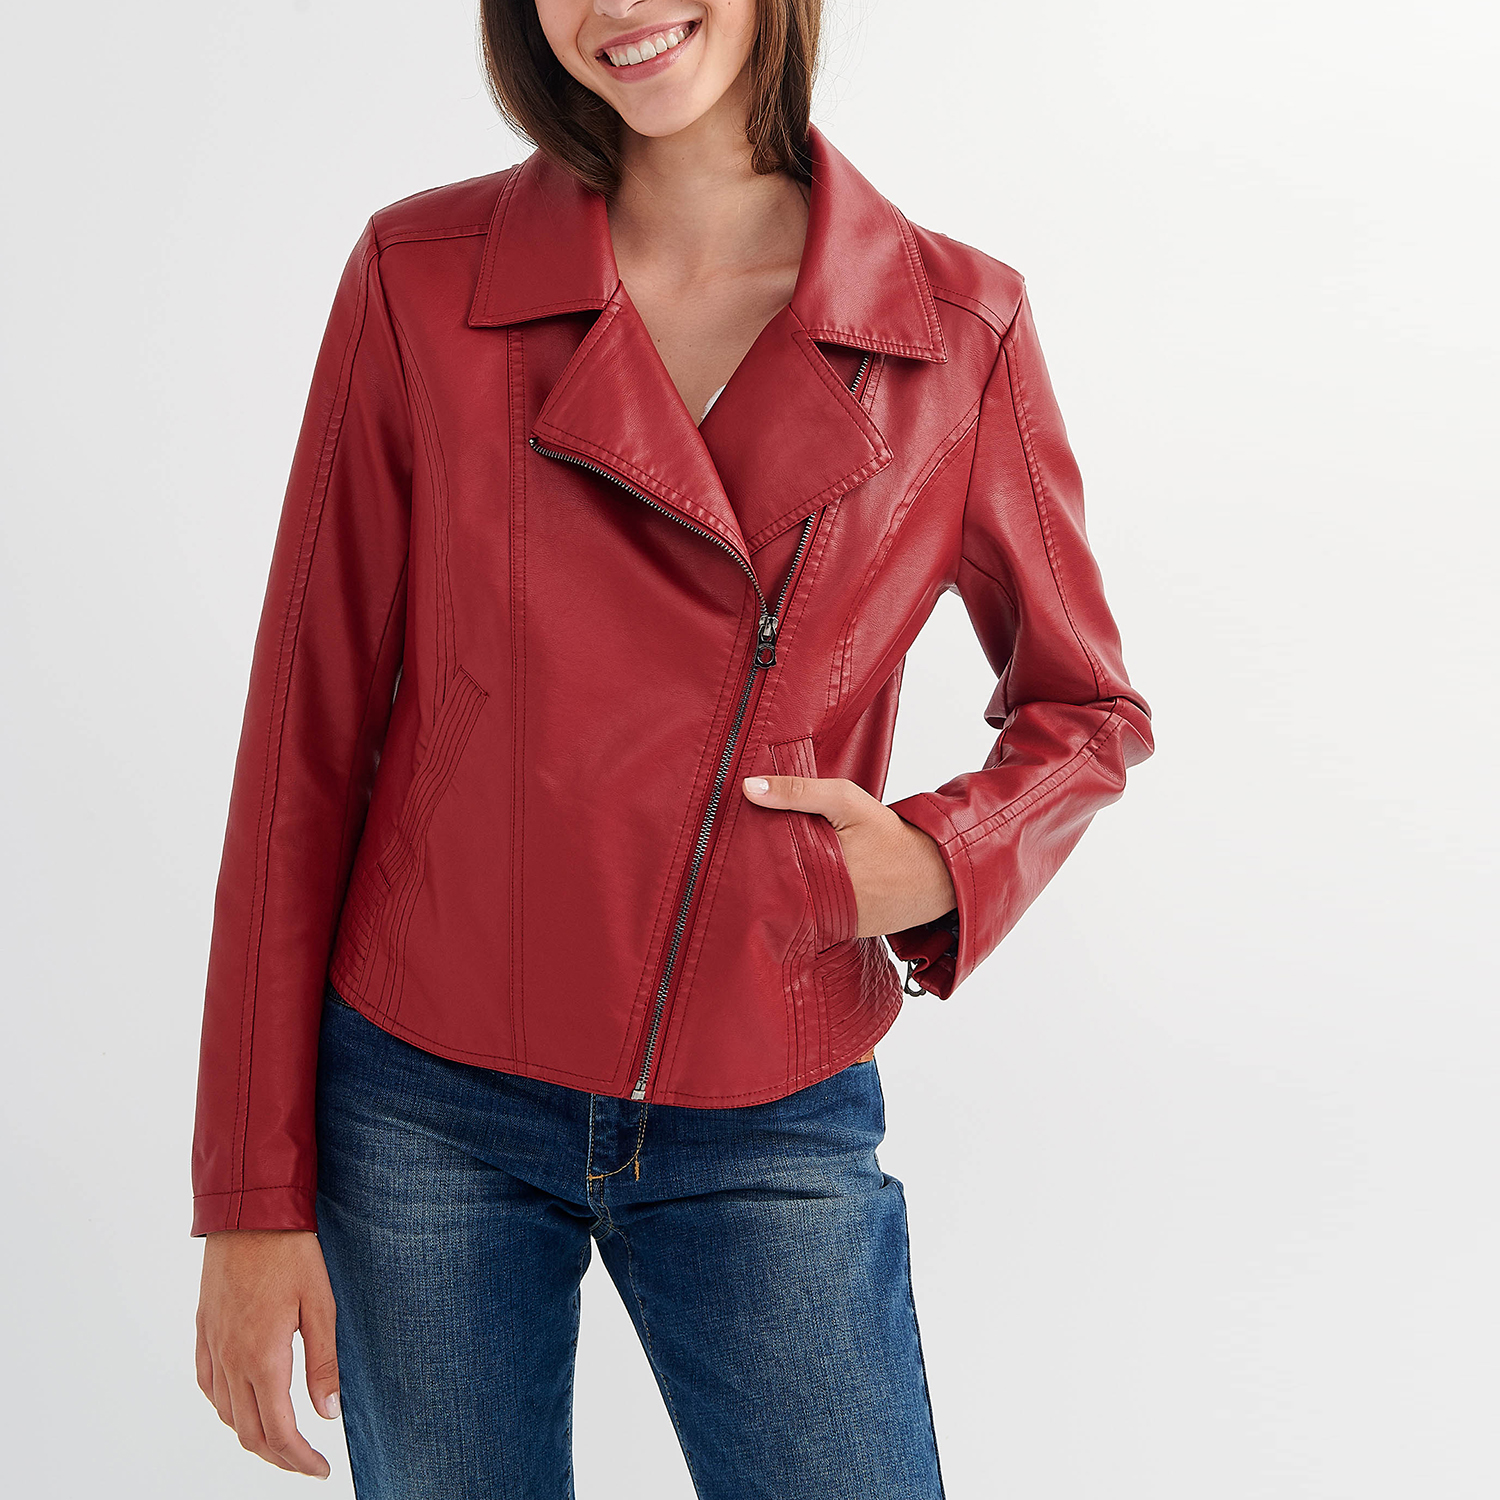 Γυναικεία/Ρούχα/Πανωφόρια/Τζάκετς ATTRATTIVO - Γυναικείο biker jacket ATTRATTIVO κόκκινο